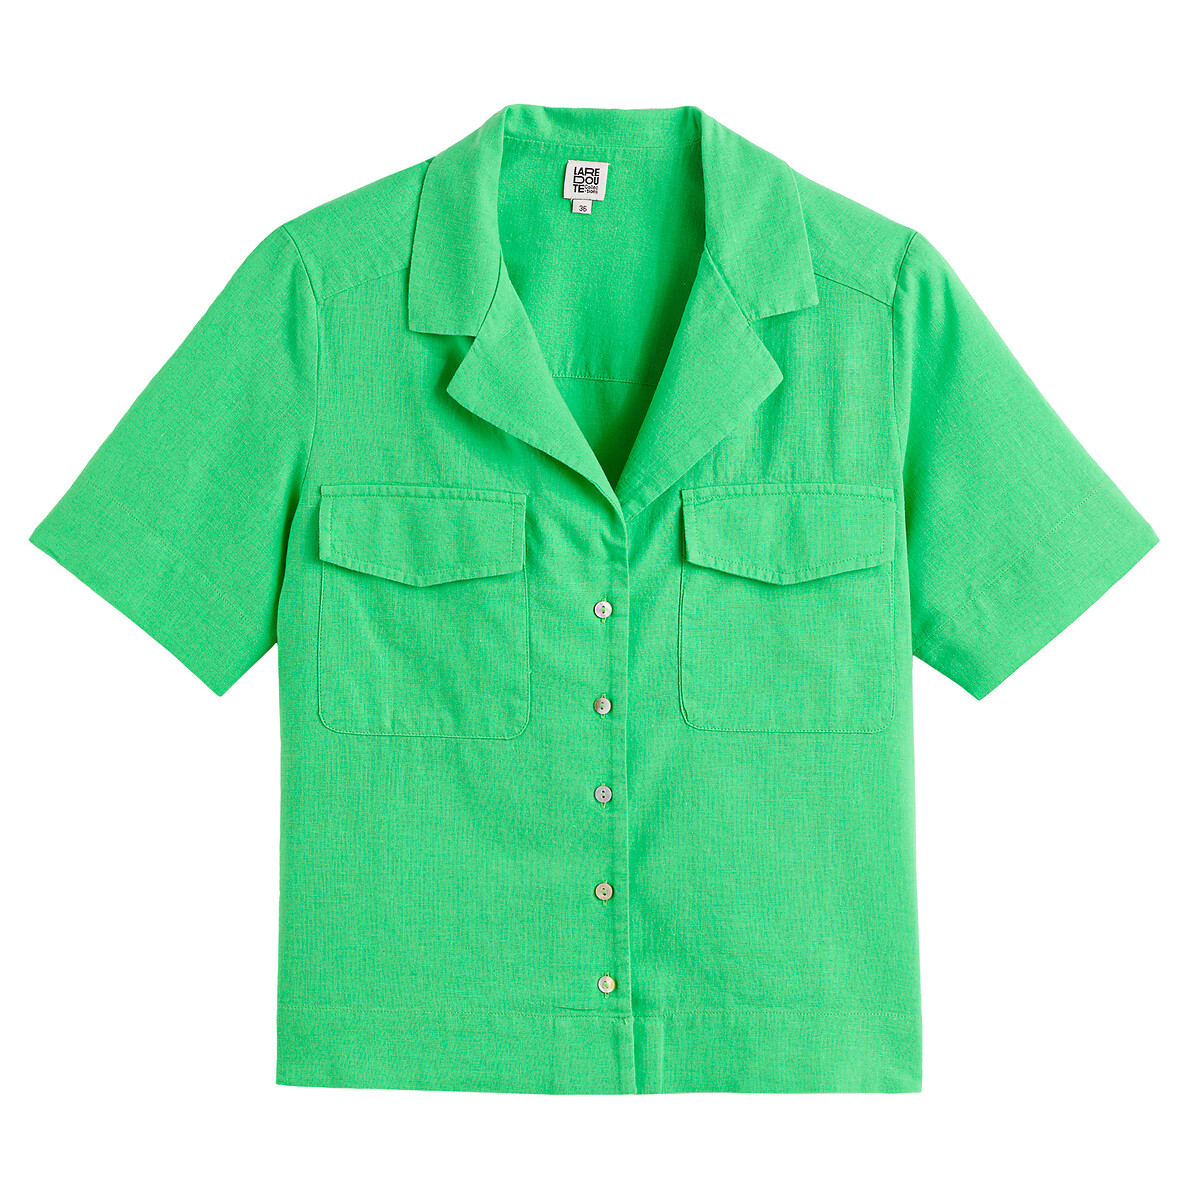 Рубашка с пиджачным воротником изо льна и хлопка  40 (FR) - 46 (RUS) зеленый LaRedoute, размер 40 (FR) - 46 (RUS) Рубашка с пиджачным воротником изо льна и хлопка  40 (FR) - 46 (RUS) зеленый - фото 5